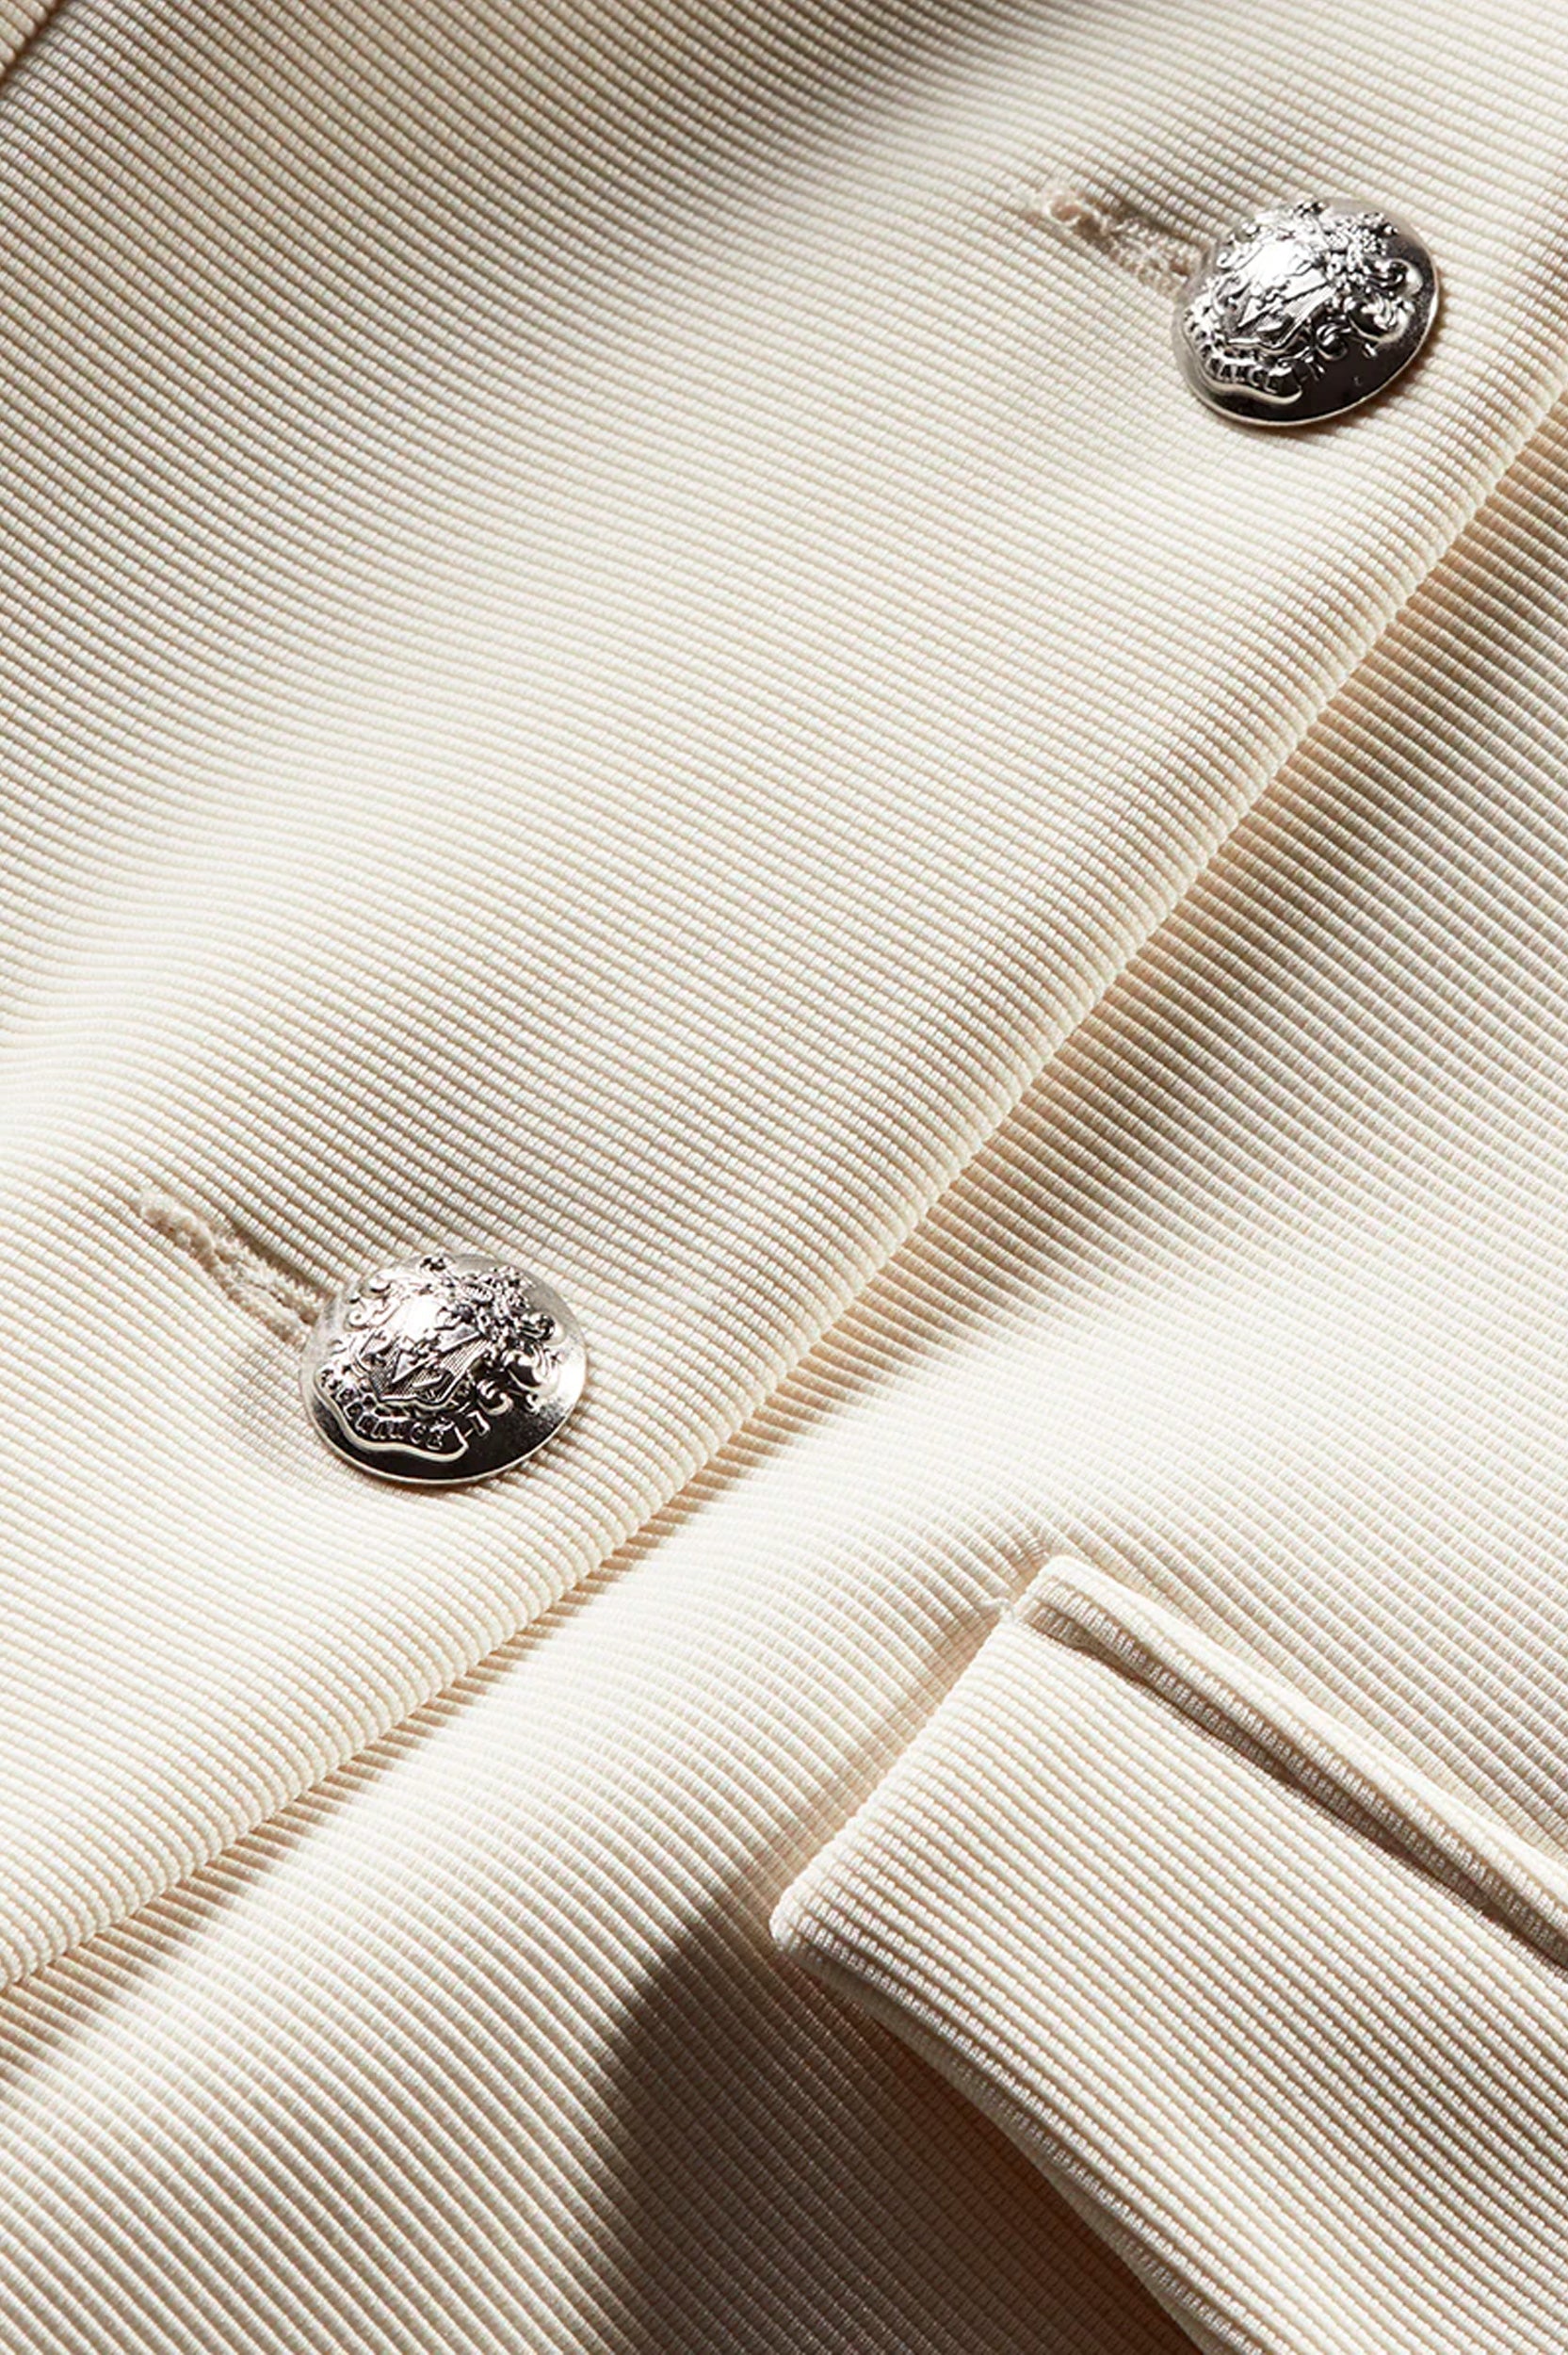 Kensington Knit Jacket in Ivory